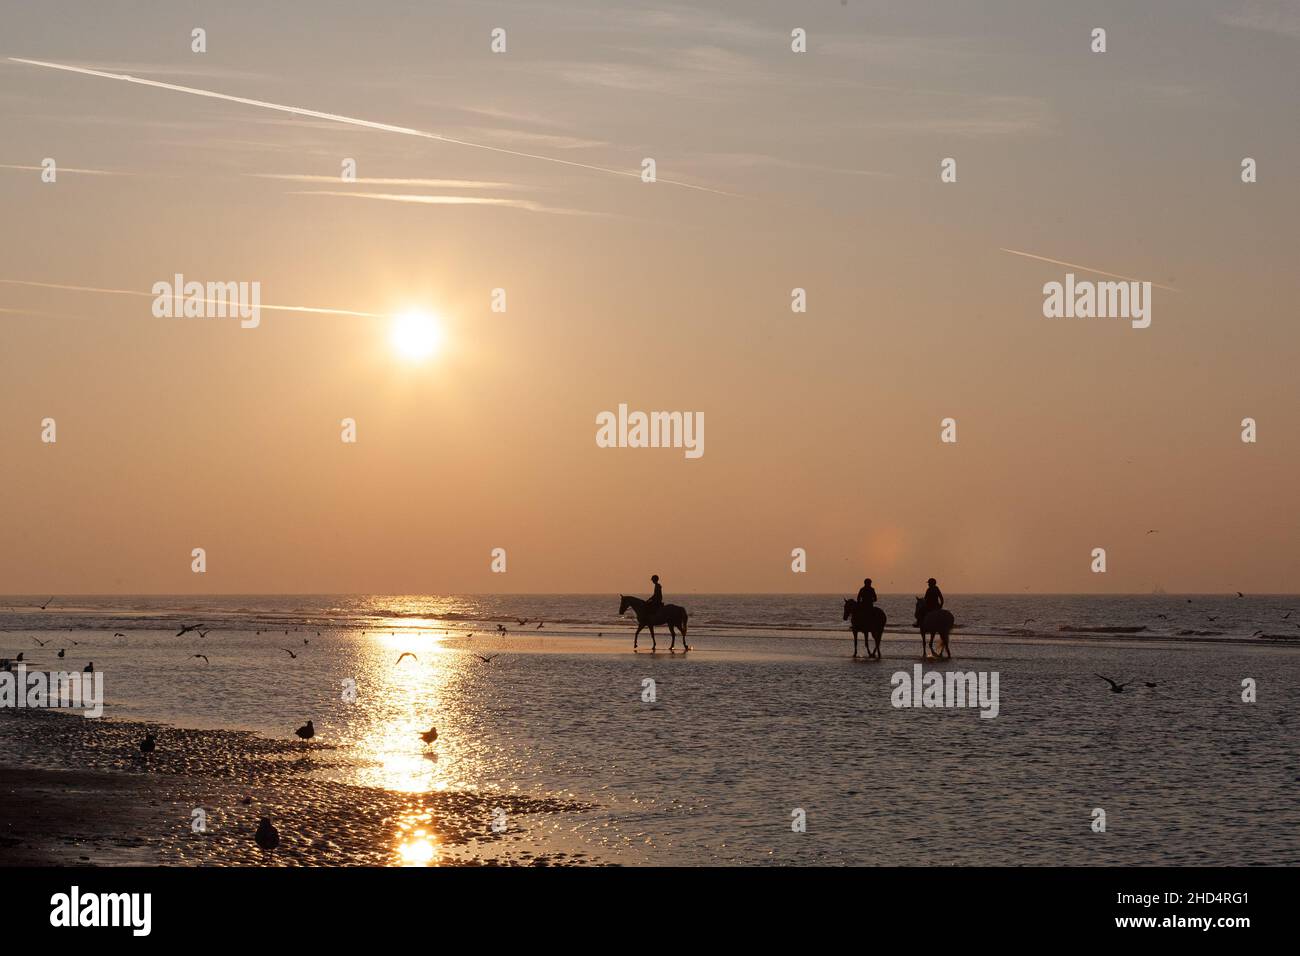 Vue panoramique de trois silhouettes à cheval sur la plage au coucher du soleil à Nieuwpoort, Belgique Banque D'Images